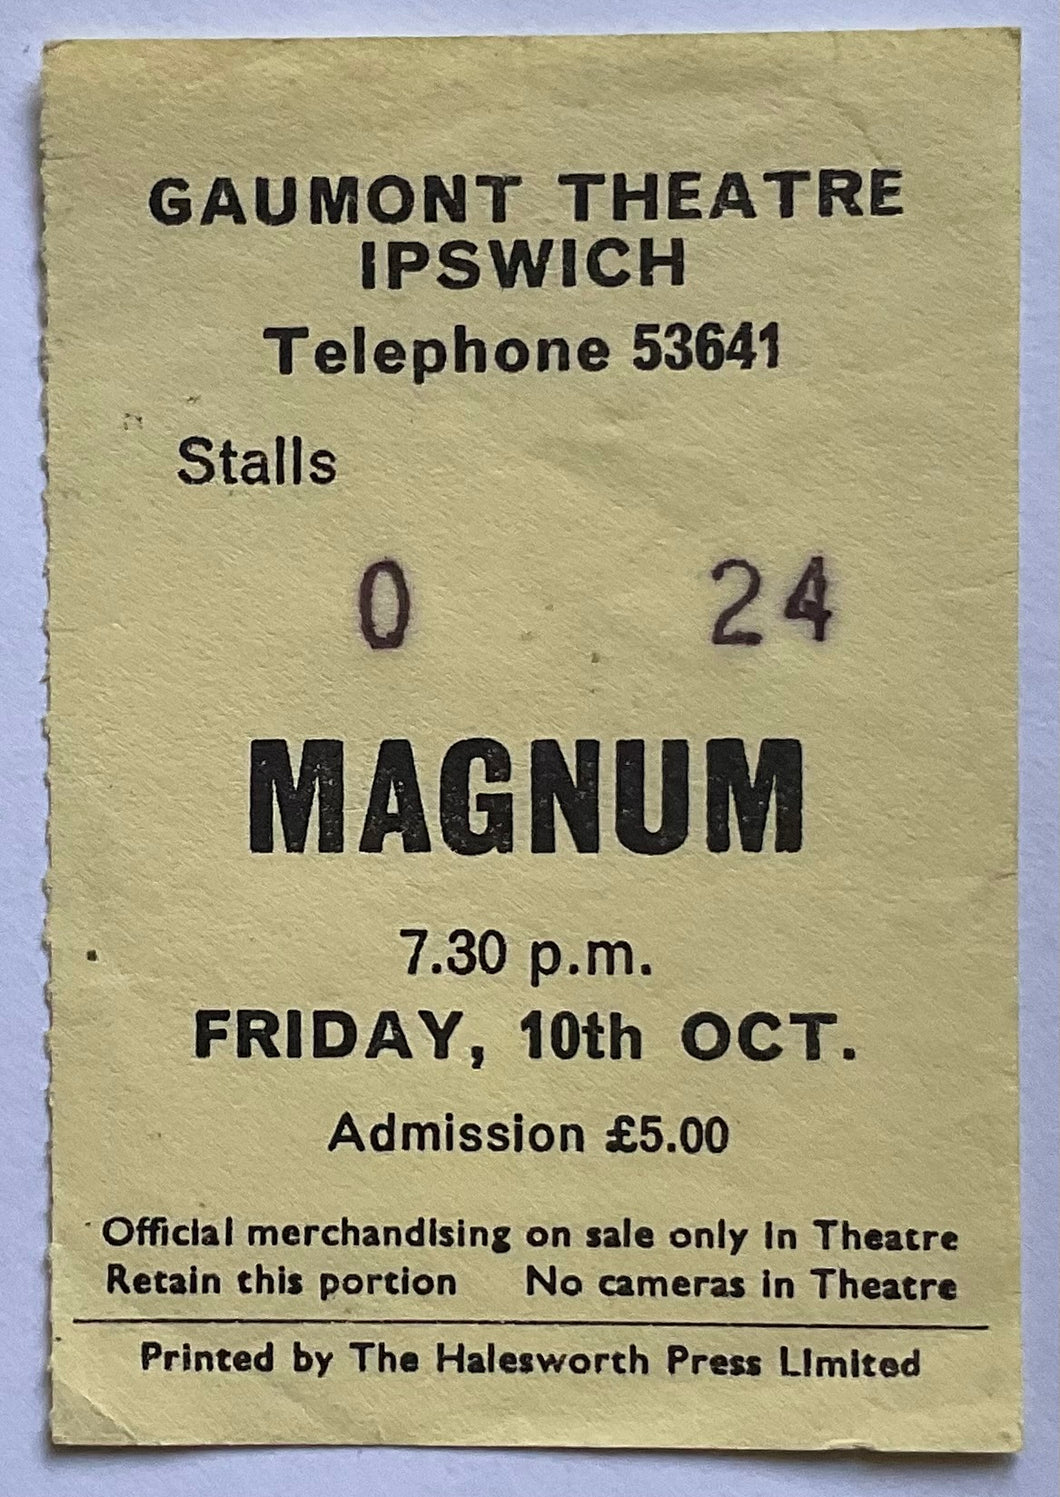 Magnum Original Used Concert Ticket Gaumont Theatre Ipswich 10th Oct 1986